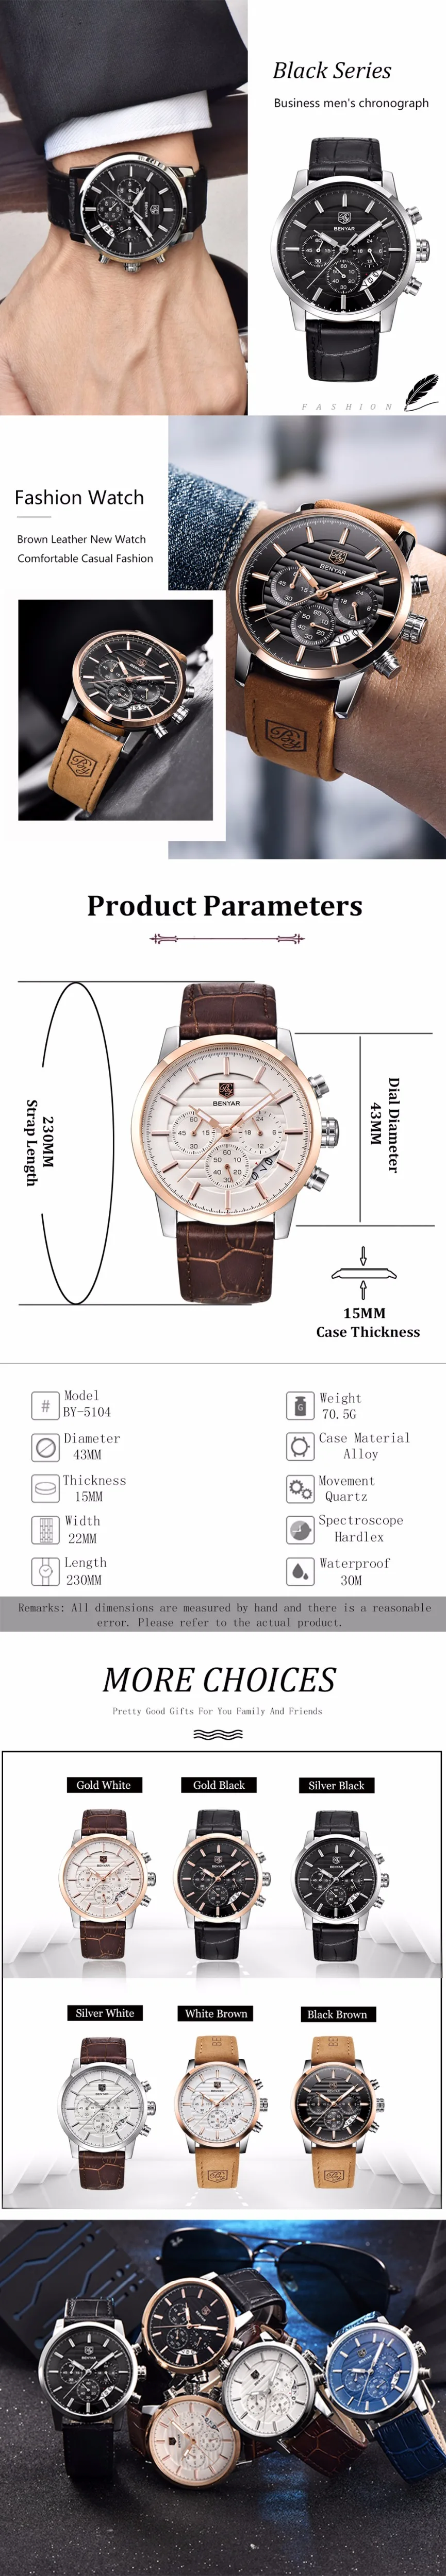 Часы мужские BENYAR мужские s часы лучший бренд класса люкс модные повседневные деловые кварцевые часы с коробкой Набор Продажа Часы мужские